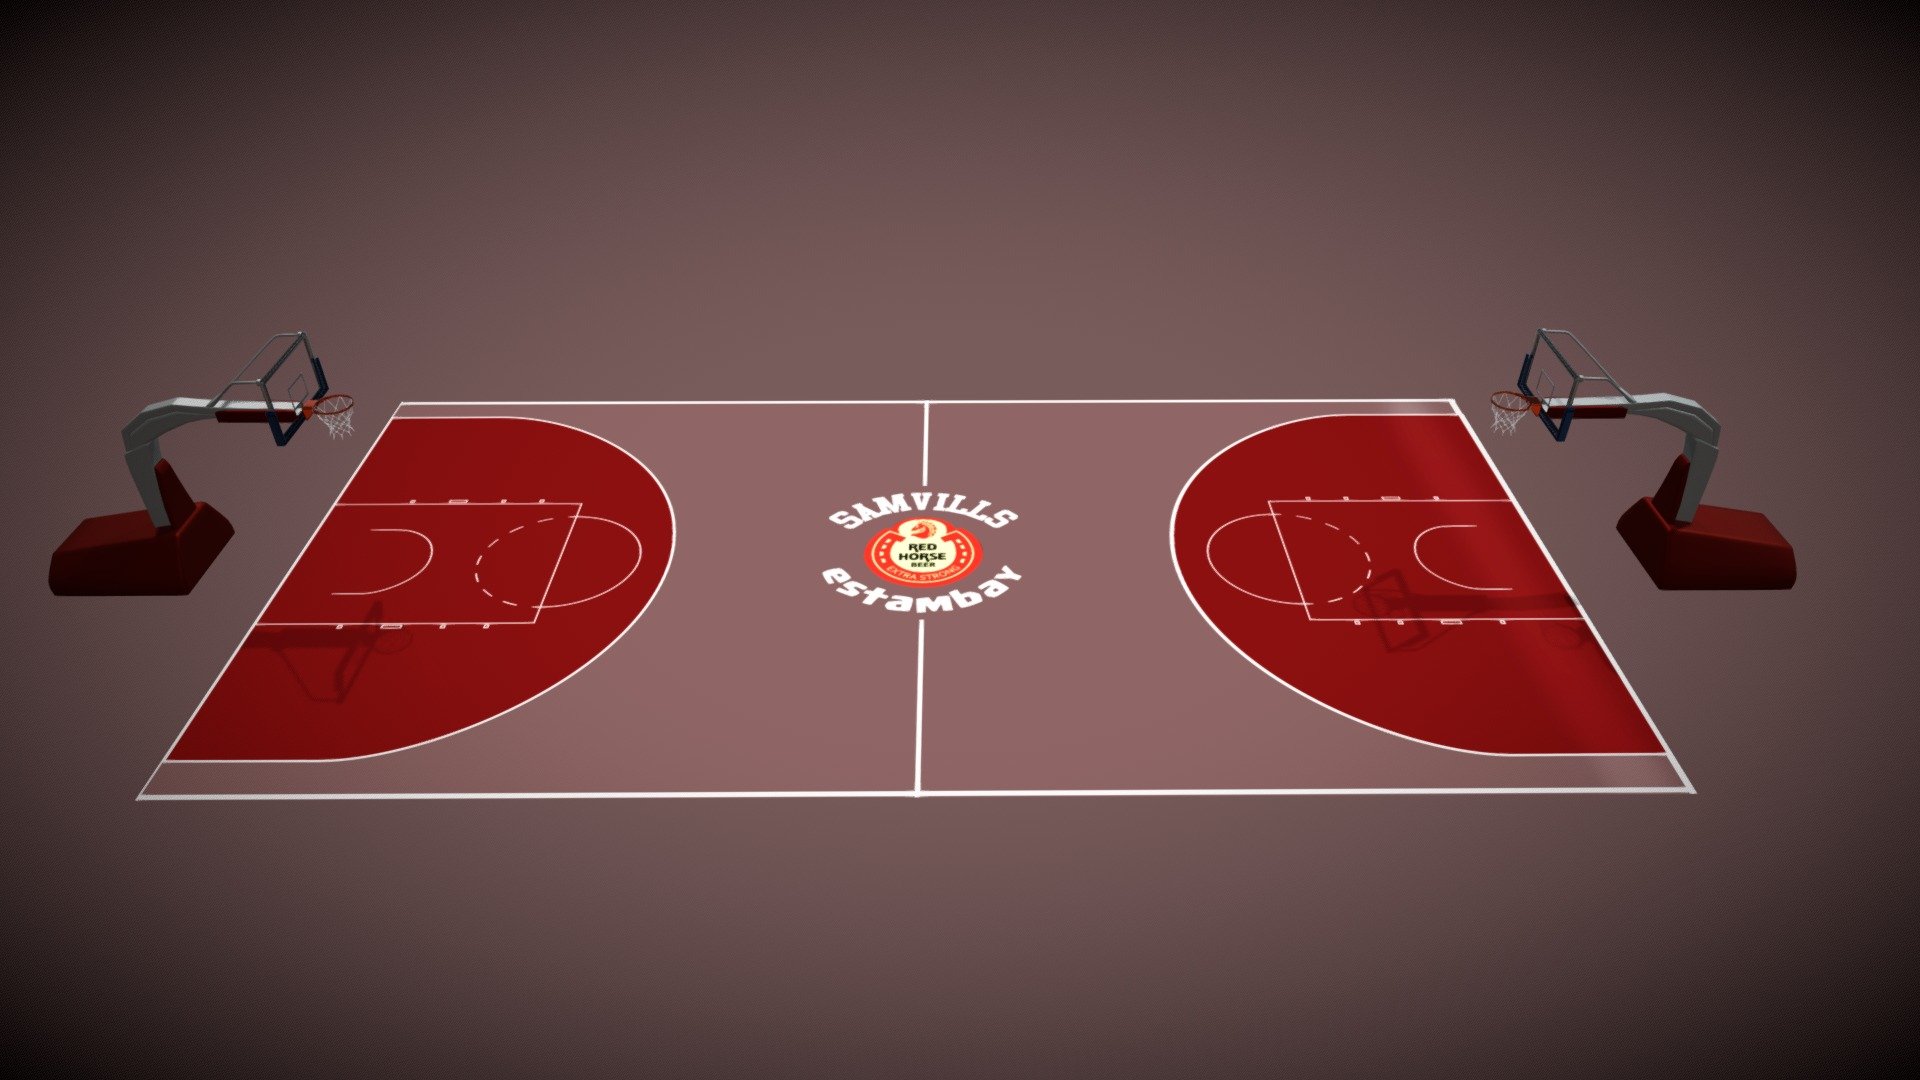 SAMVILLS Estambay Boys Basketball Court 3d model